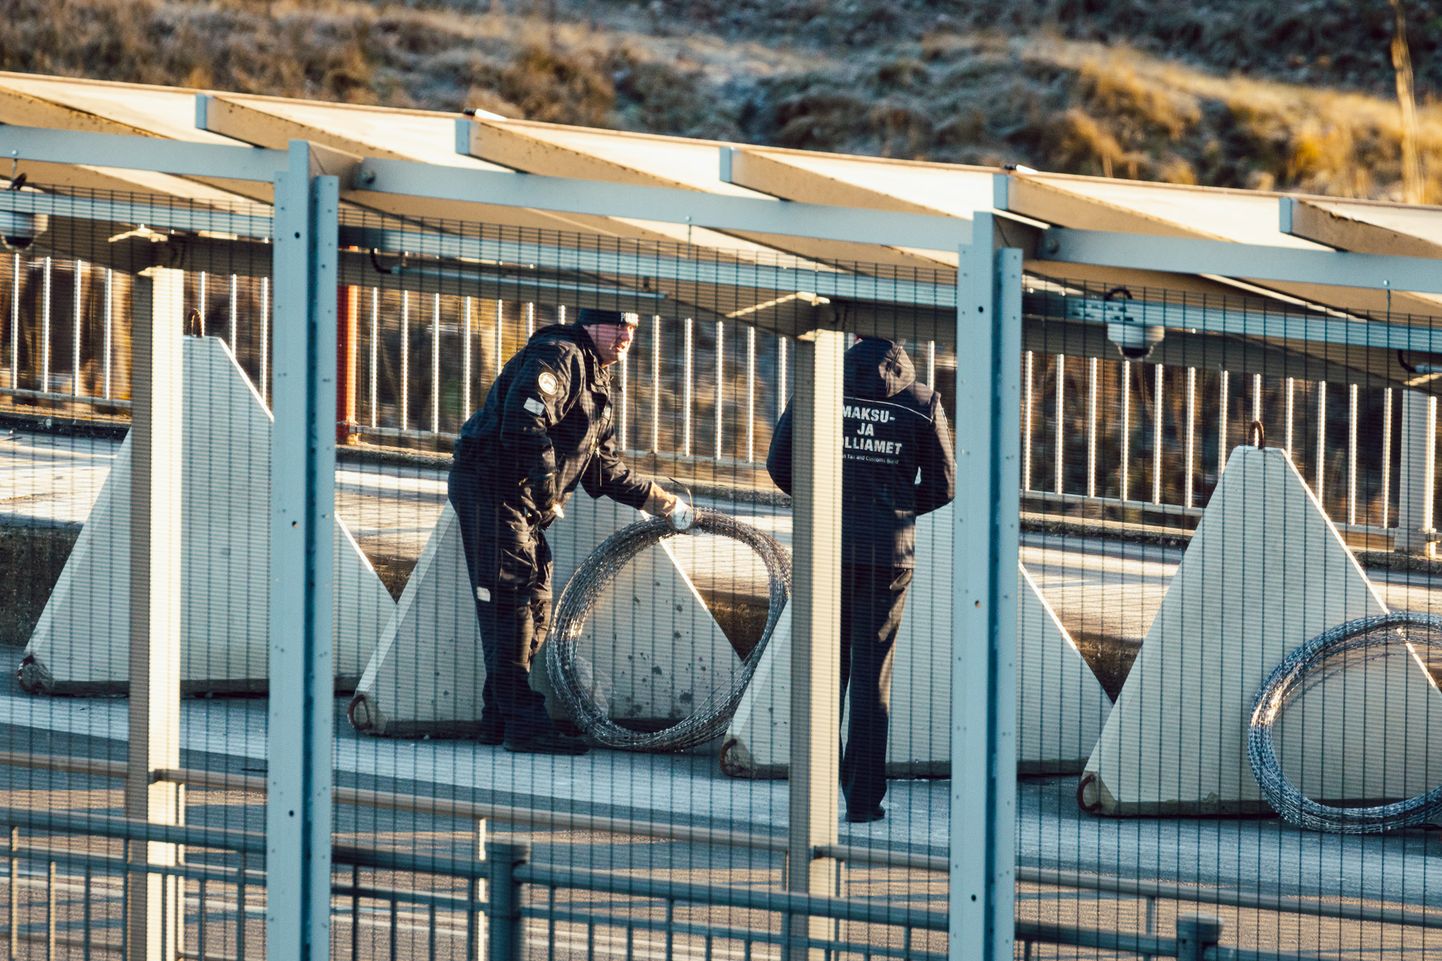 Бетонные заграждения, предусмотрительно приготовленные эстонскими пограничниками на нарвском пограничном мосту.